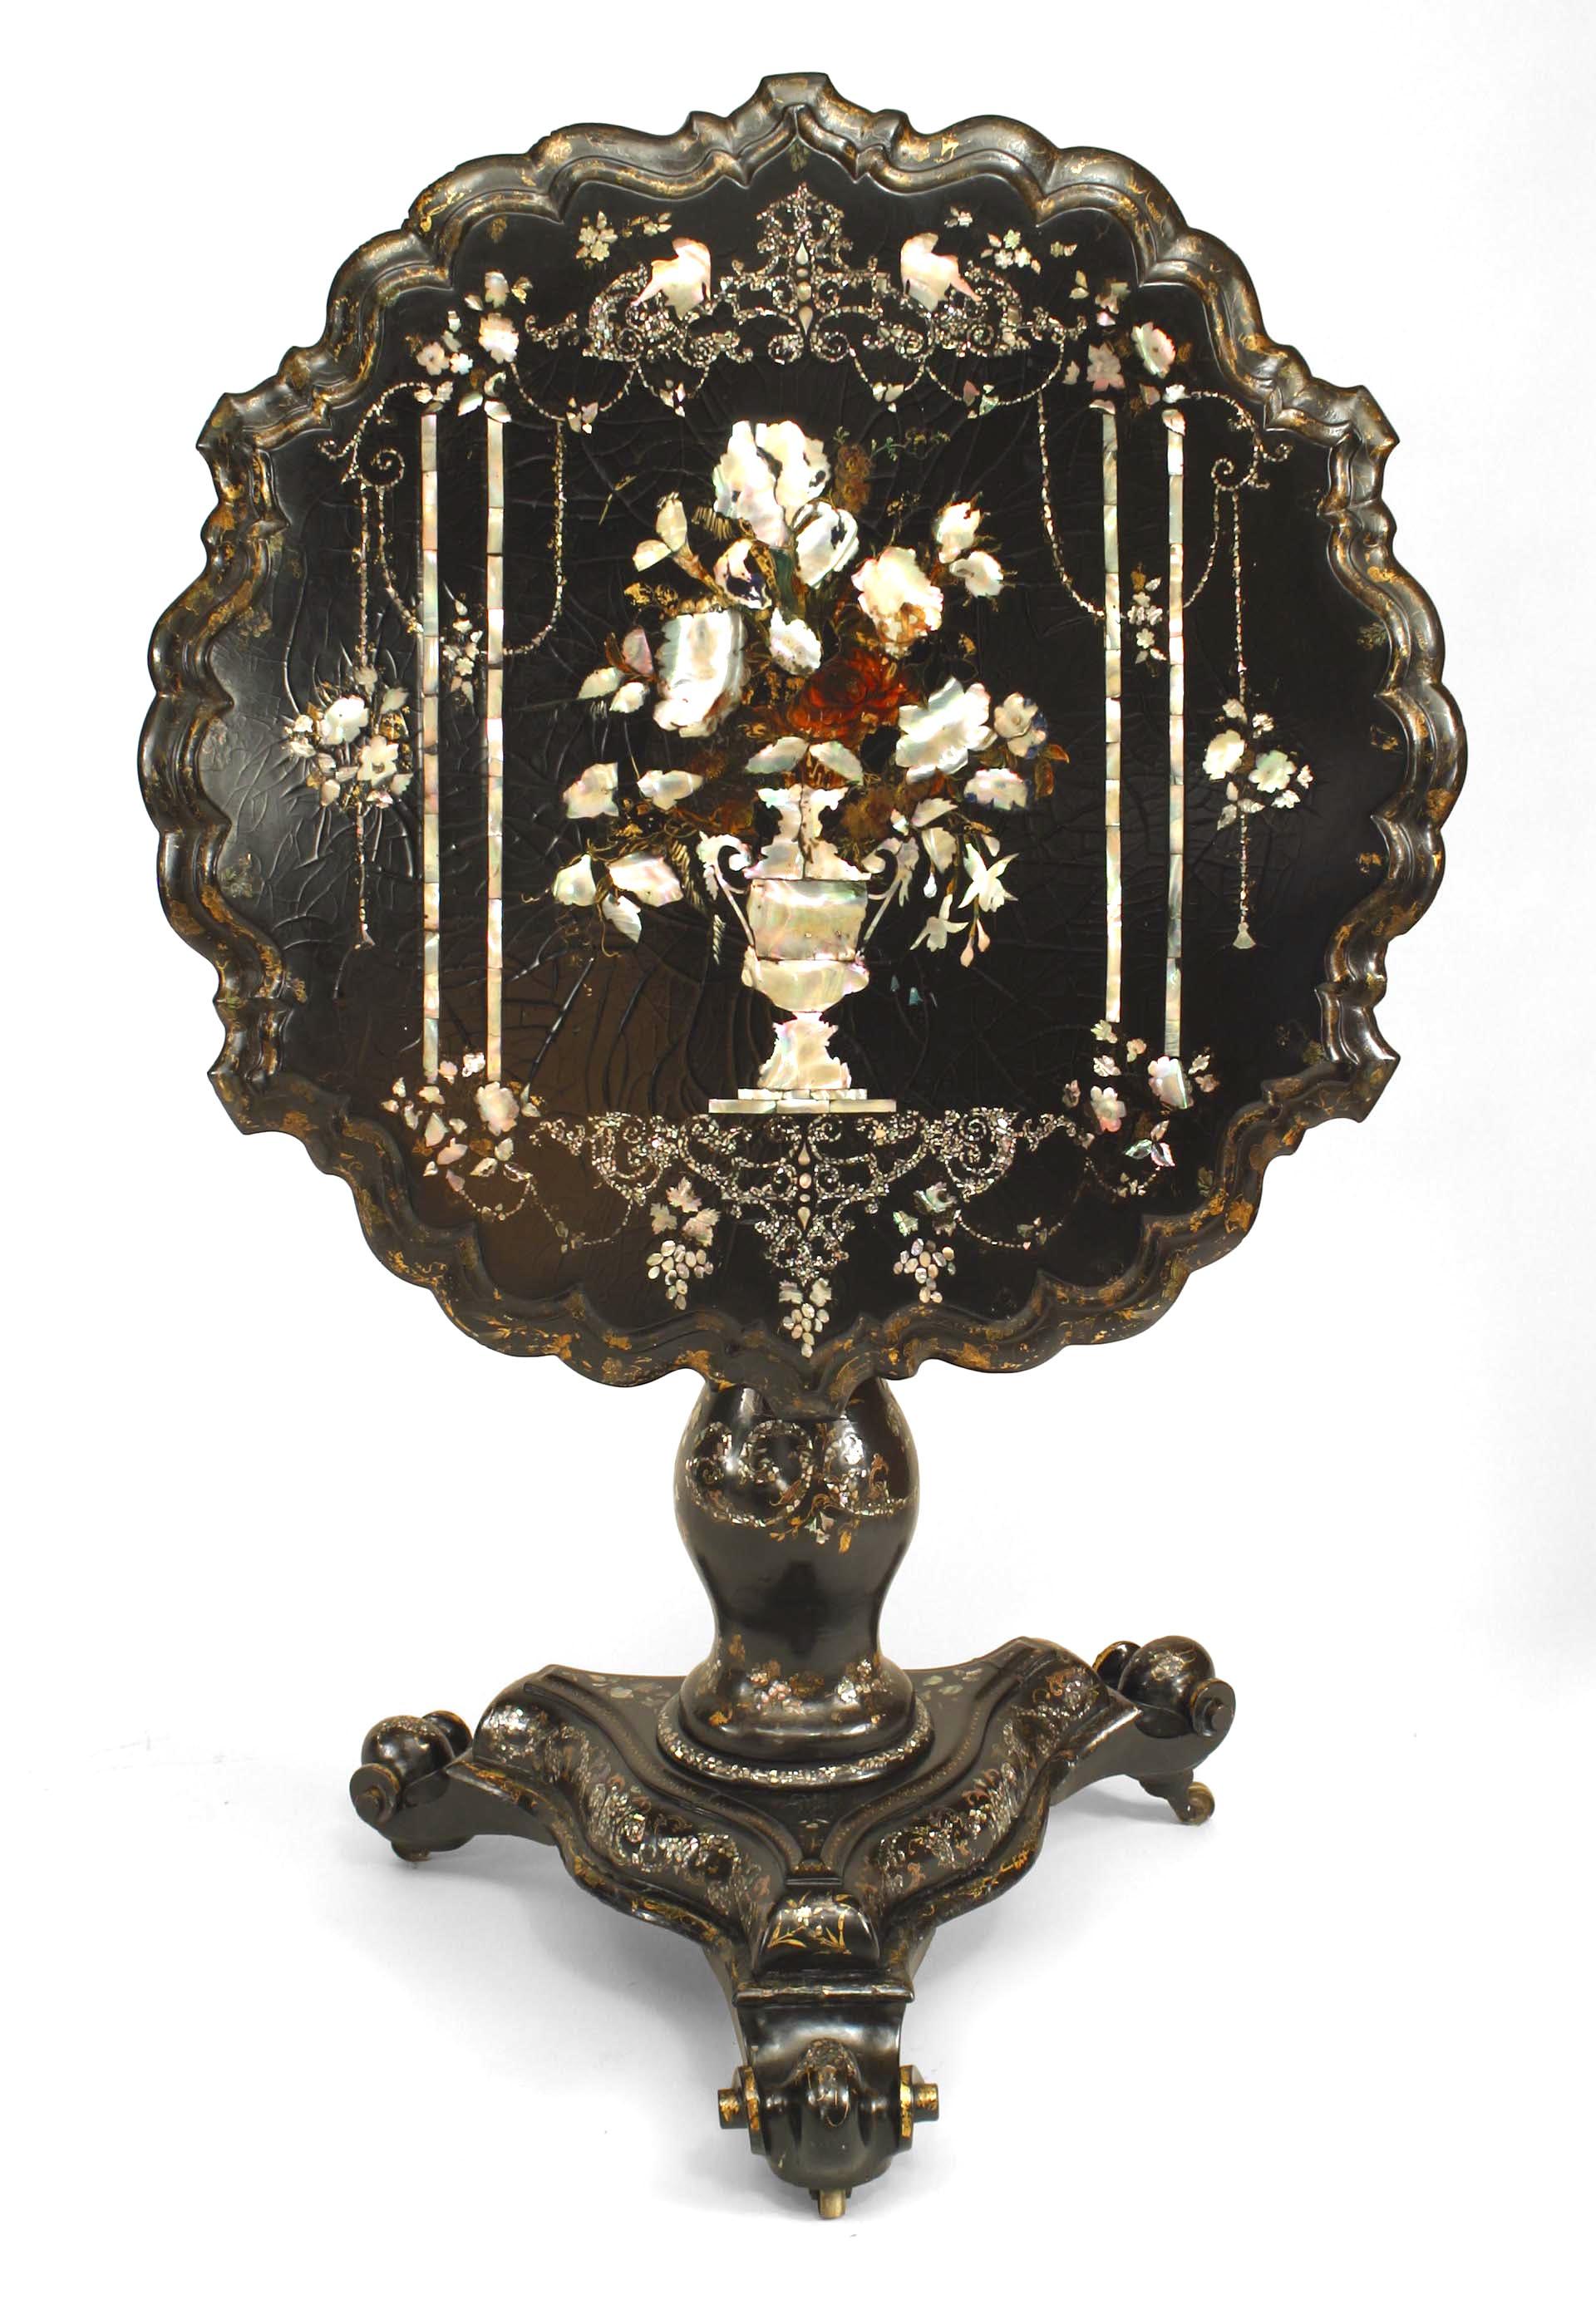 Englischer viktorianischer Papiertisch m√¢ch√© mit schwarzem Lack und Perlmutteinlagen auf einem Sockel mit kippbarer Platte, mit geschwungener Kante und Blumendekor.
